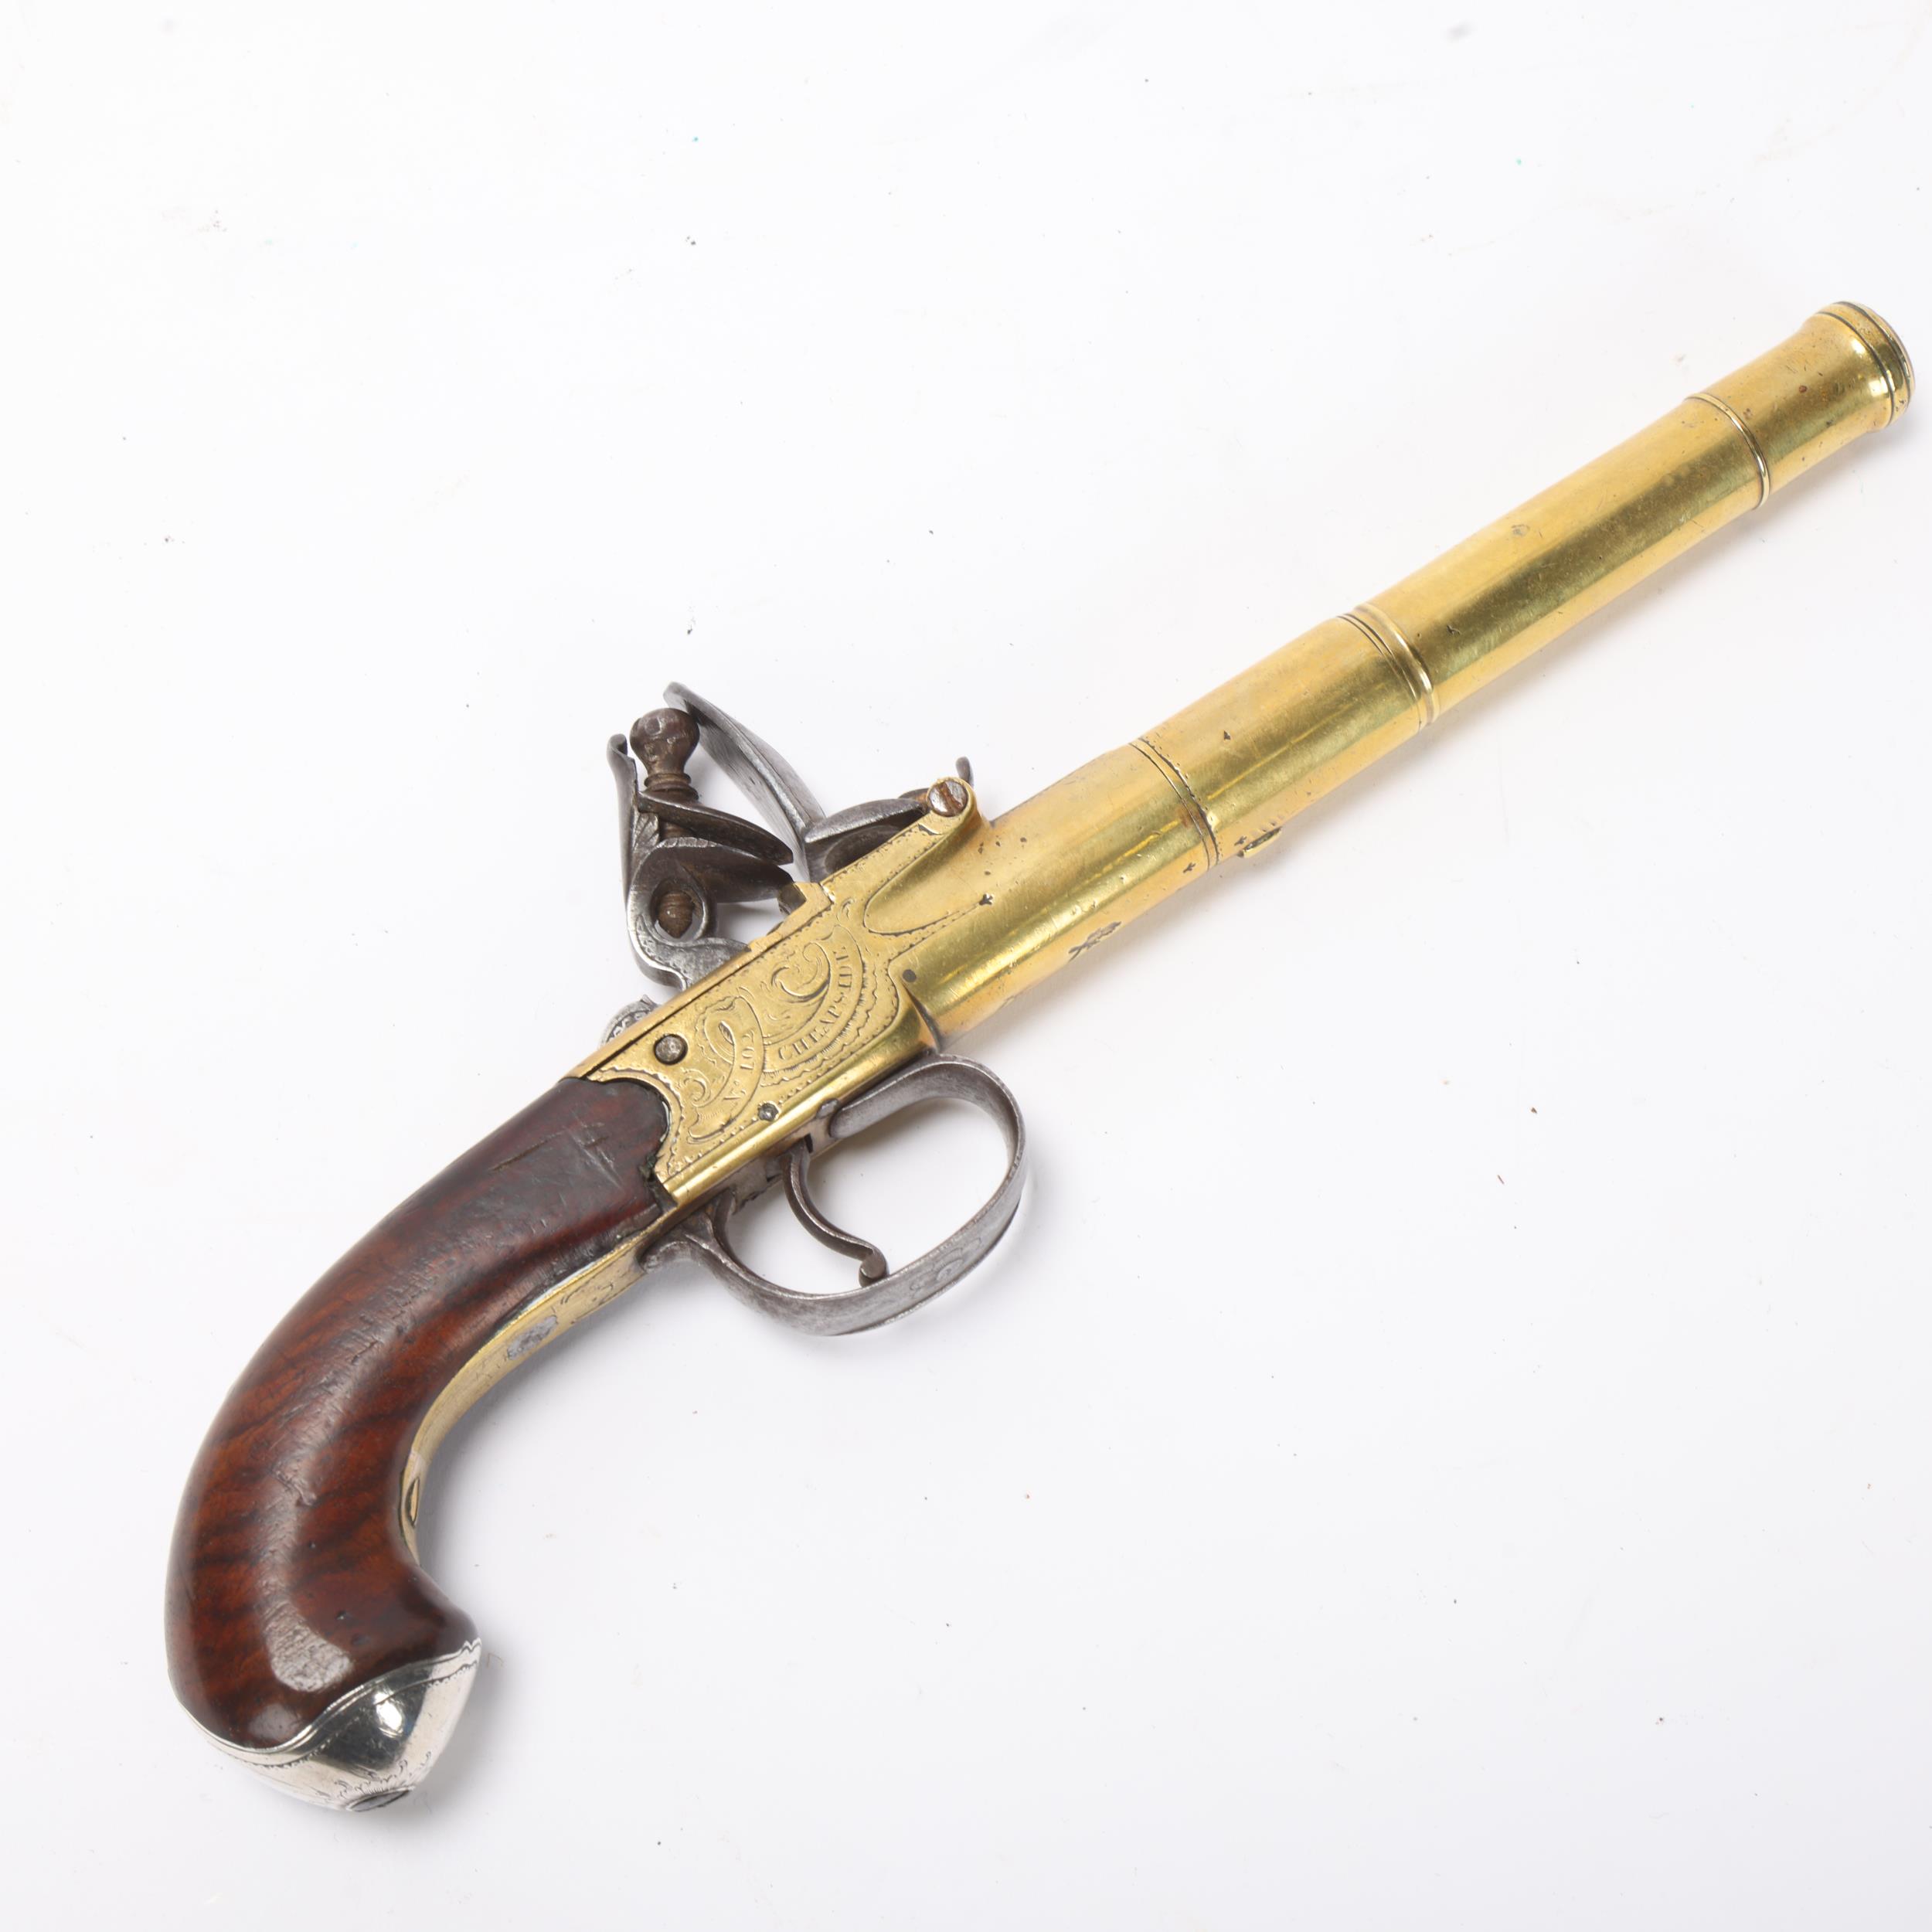 An 18th century brass cannon barrel flintlock pistol, by Clarke of Cheapside London, serial no. 102, - Image 3 of 3